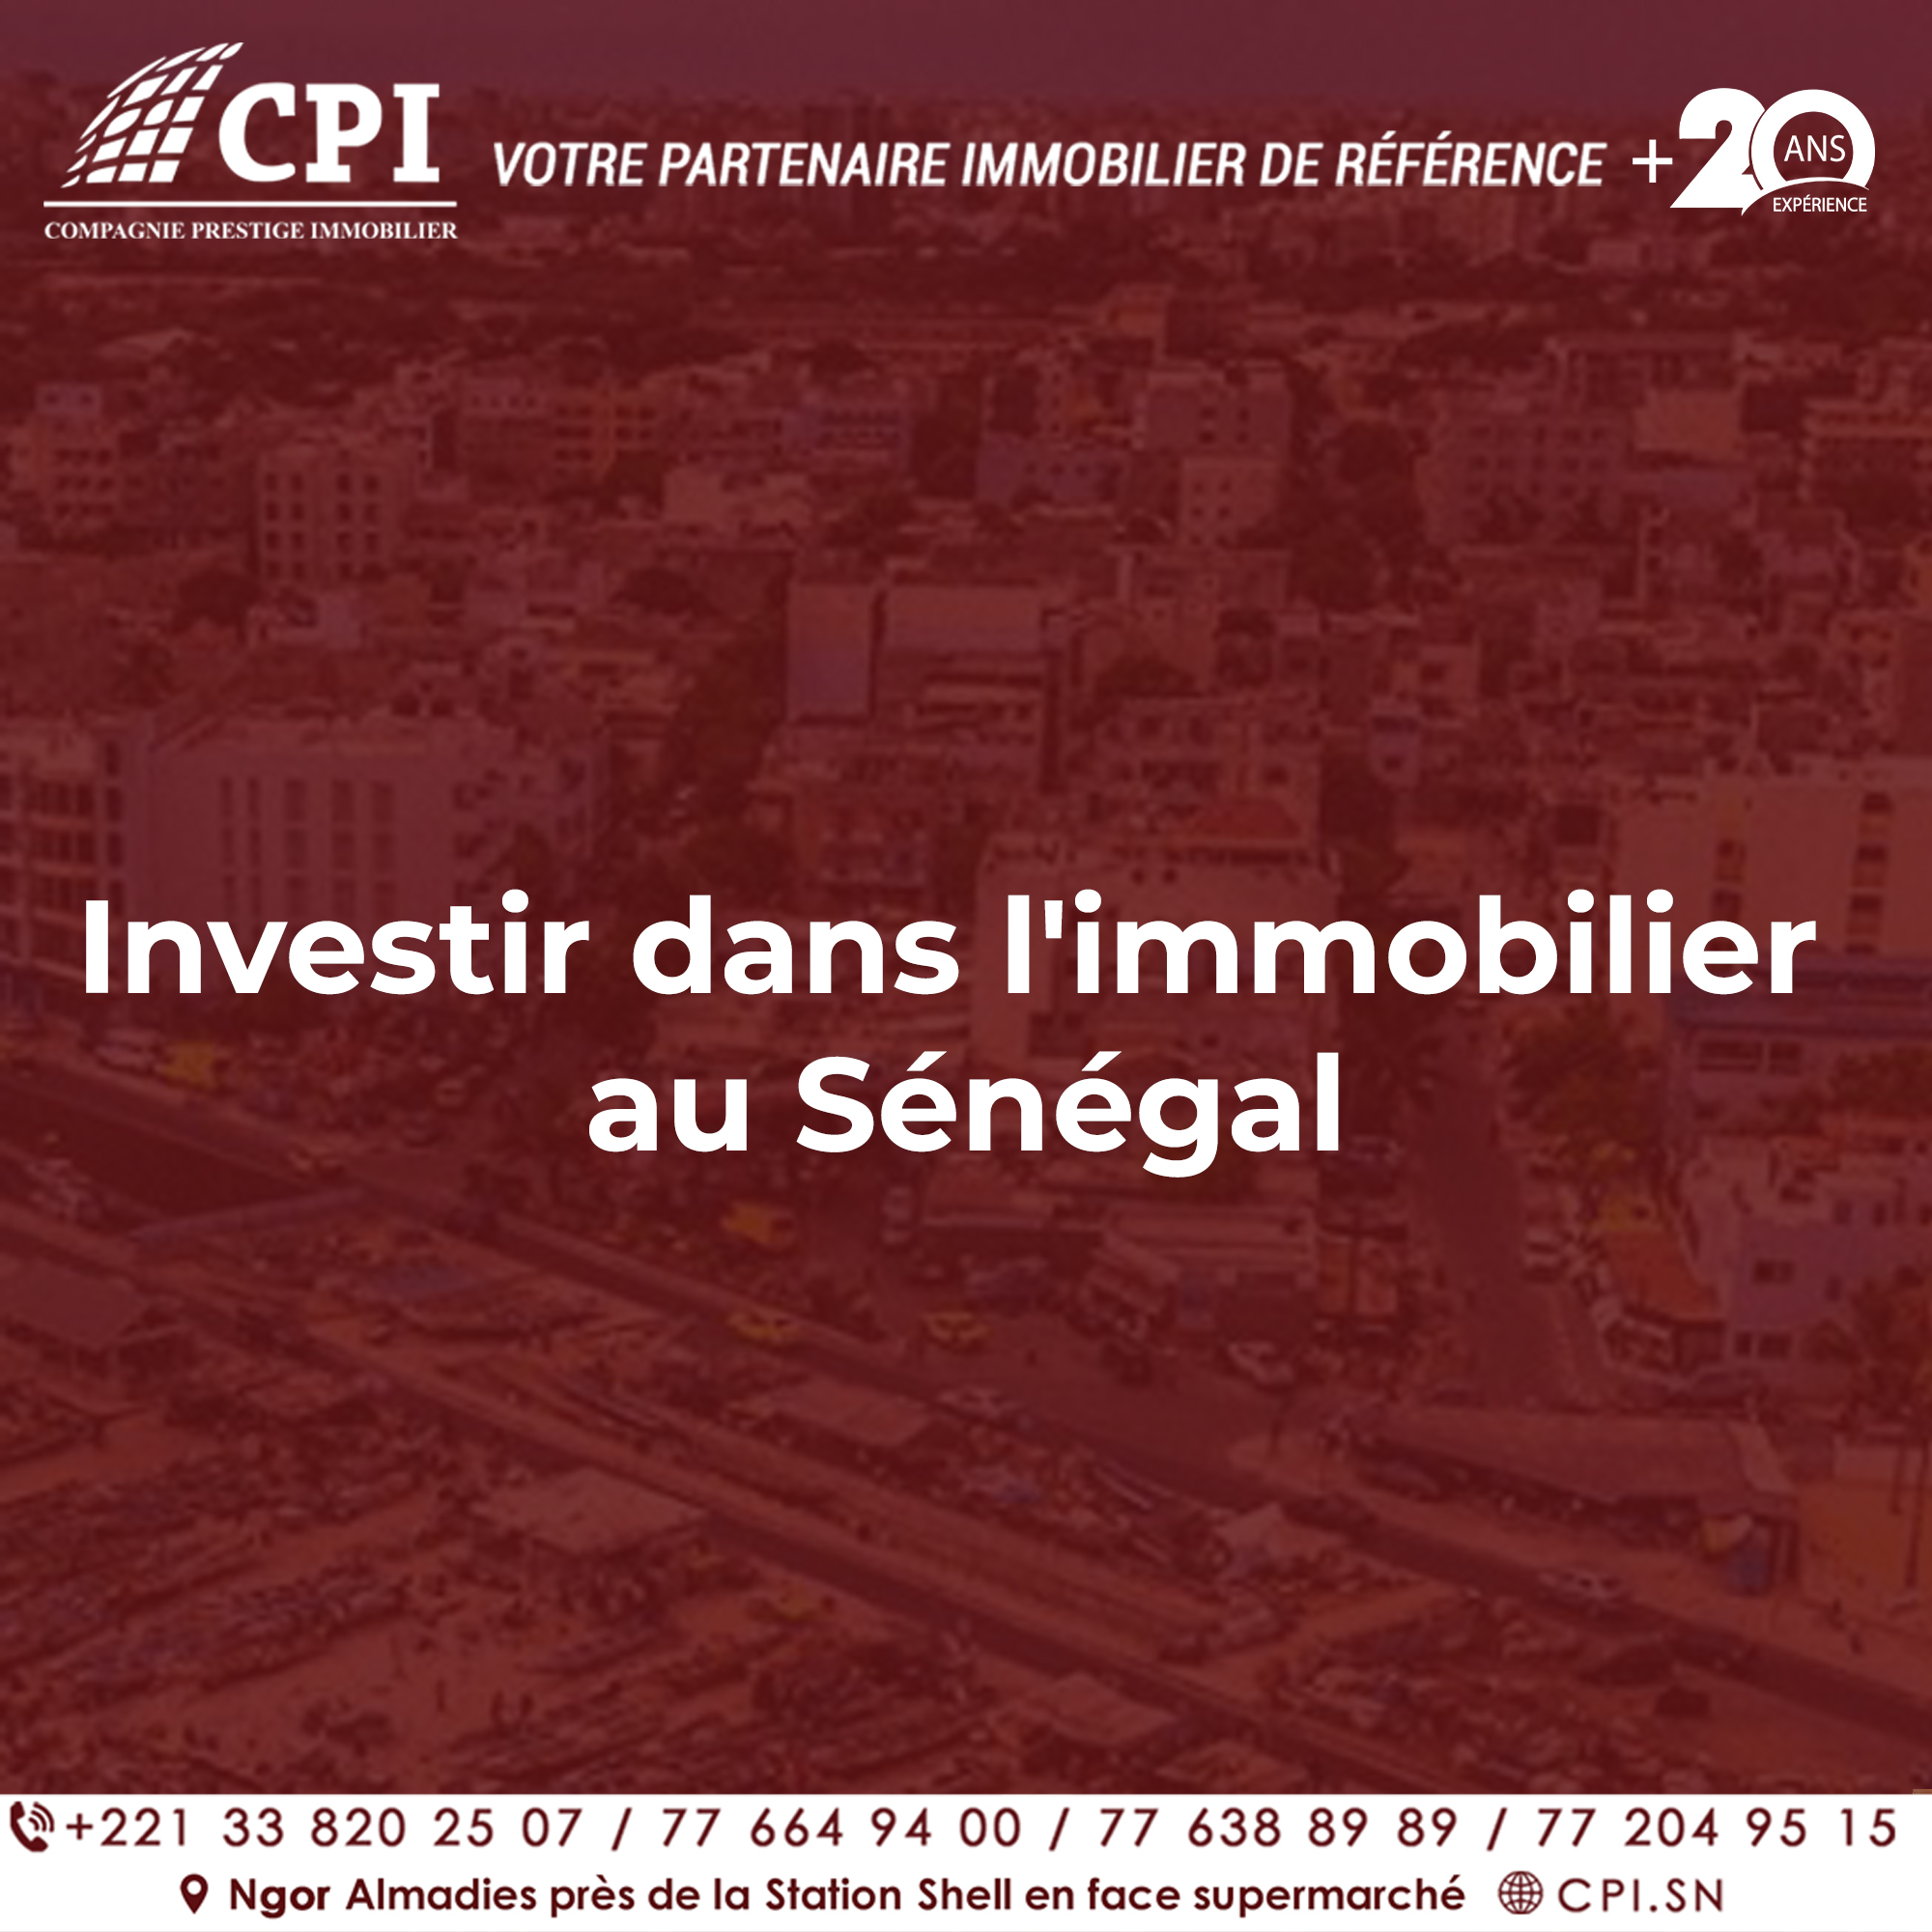 CPI Immobilier : Investir dans l’immobilier au Sénégal avec confiance